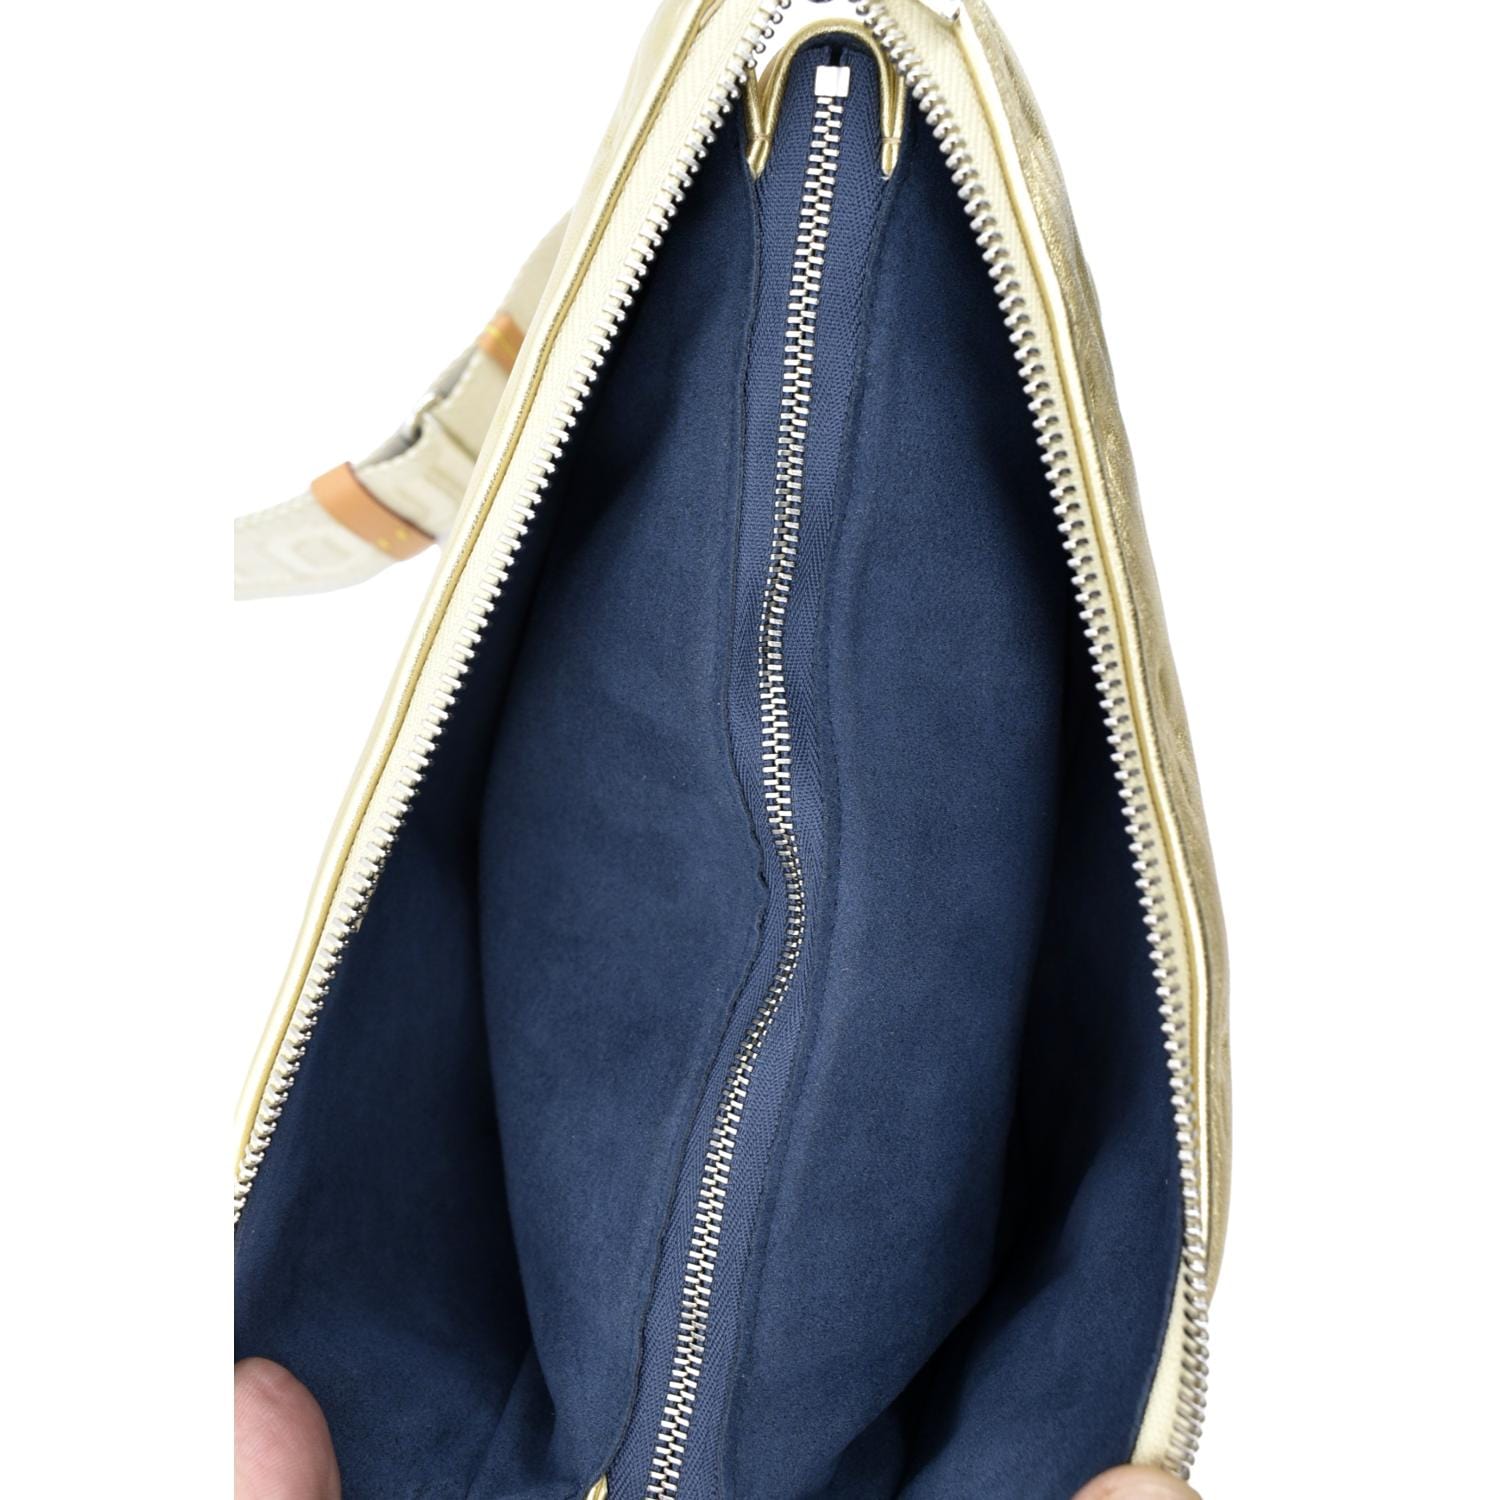 Louis Vuitton blue Leather Coussin PM Shoulder Bag